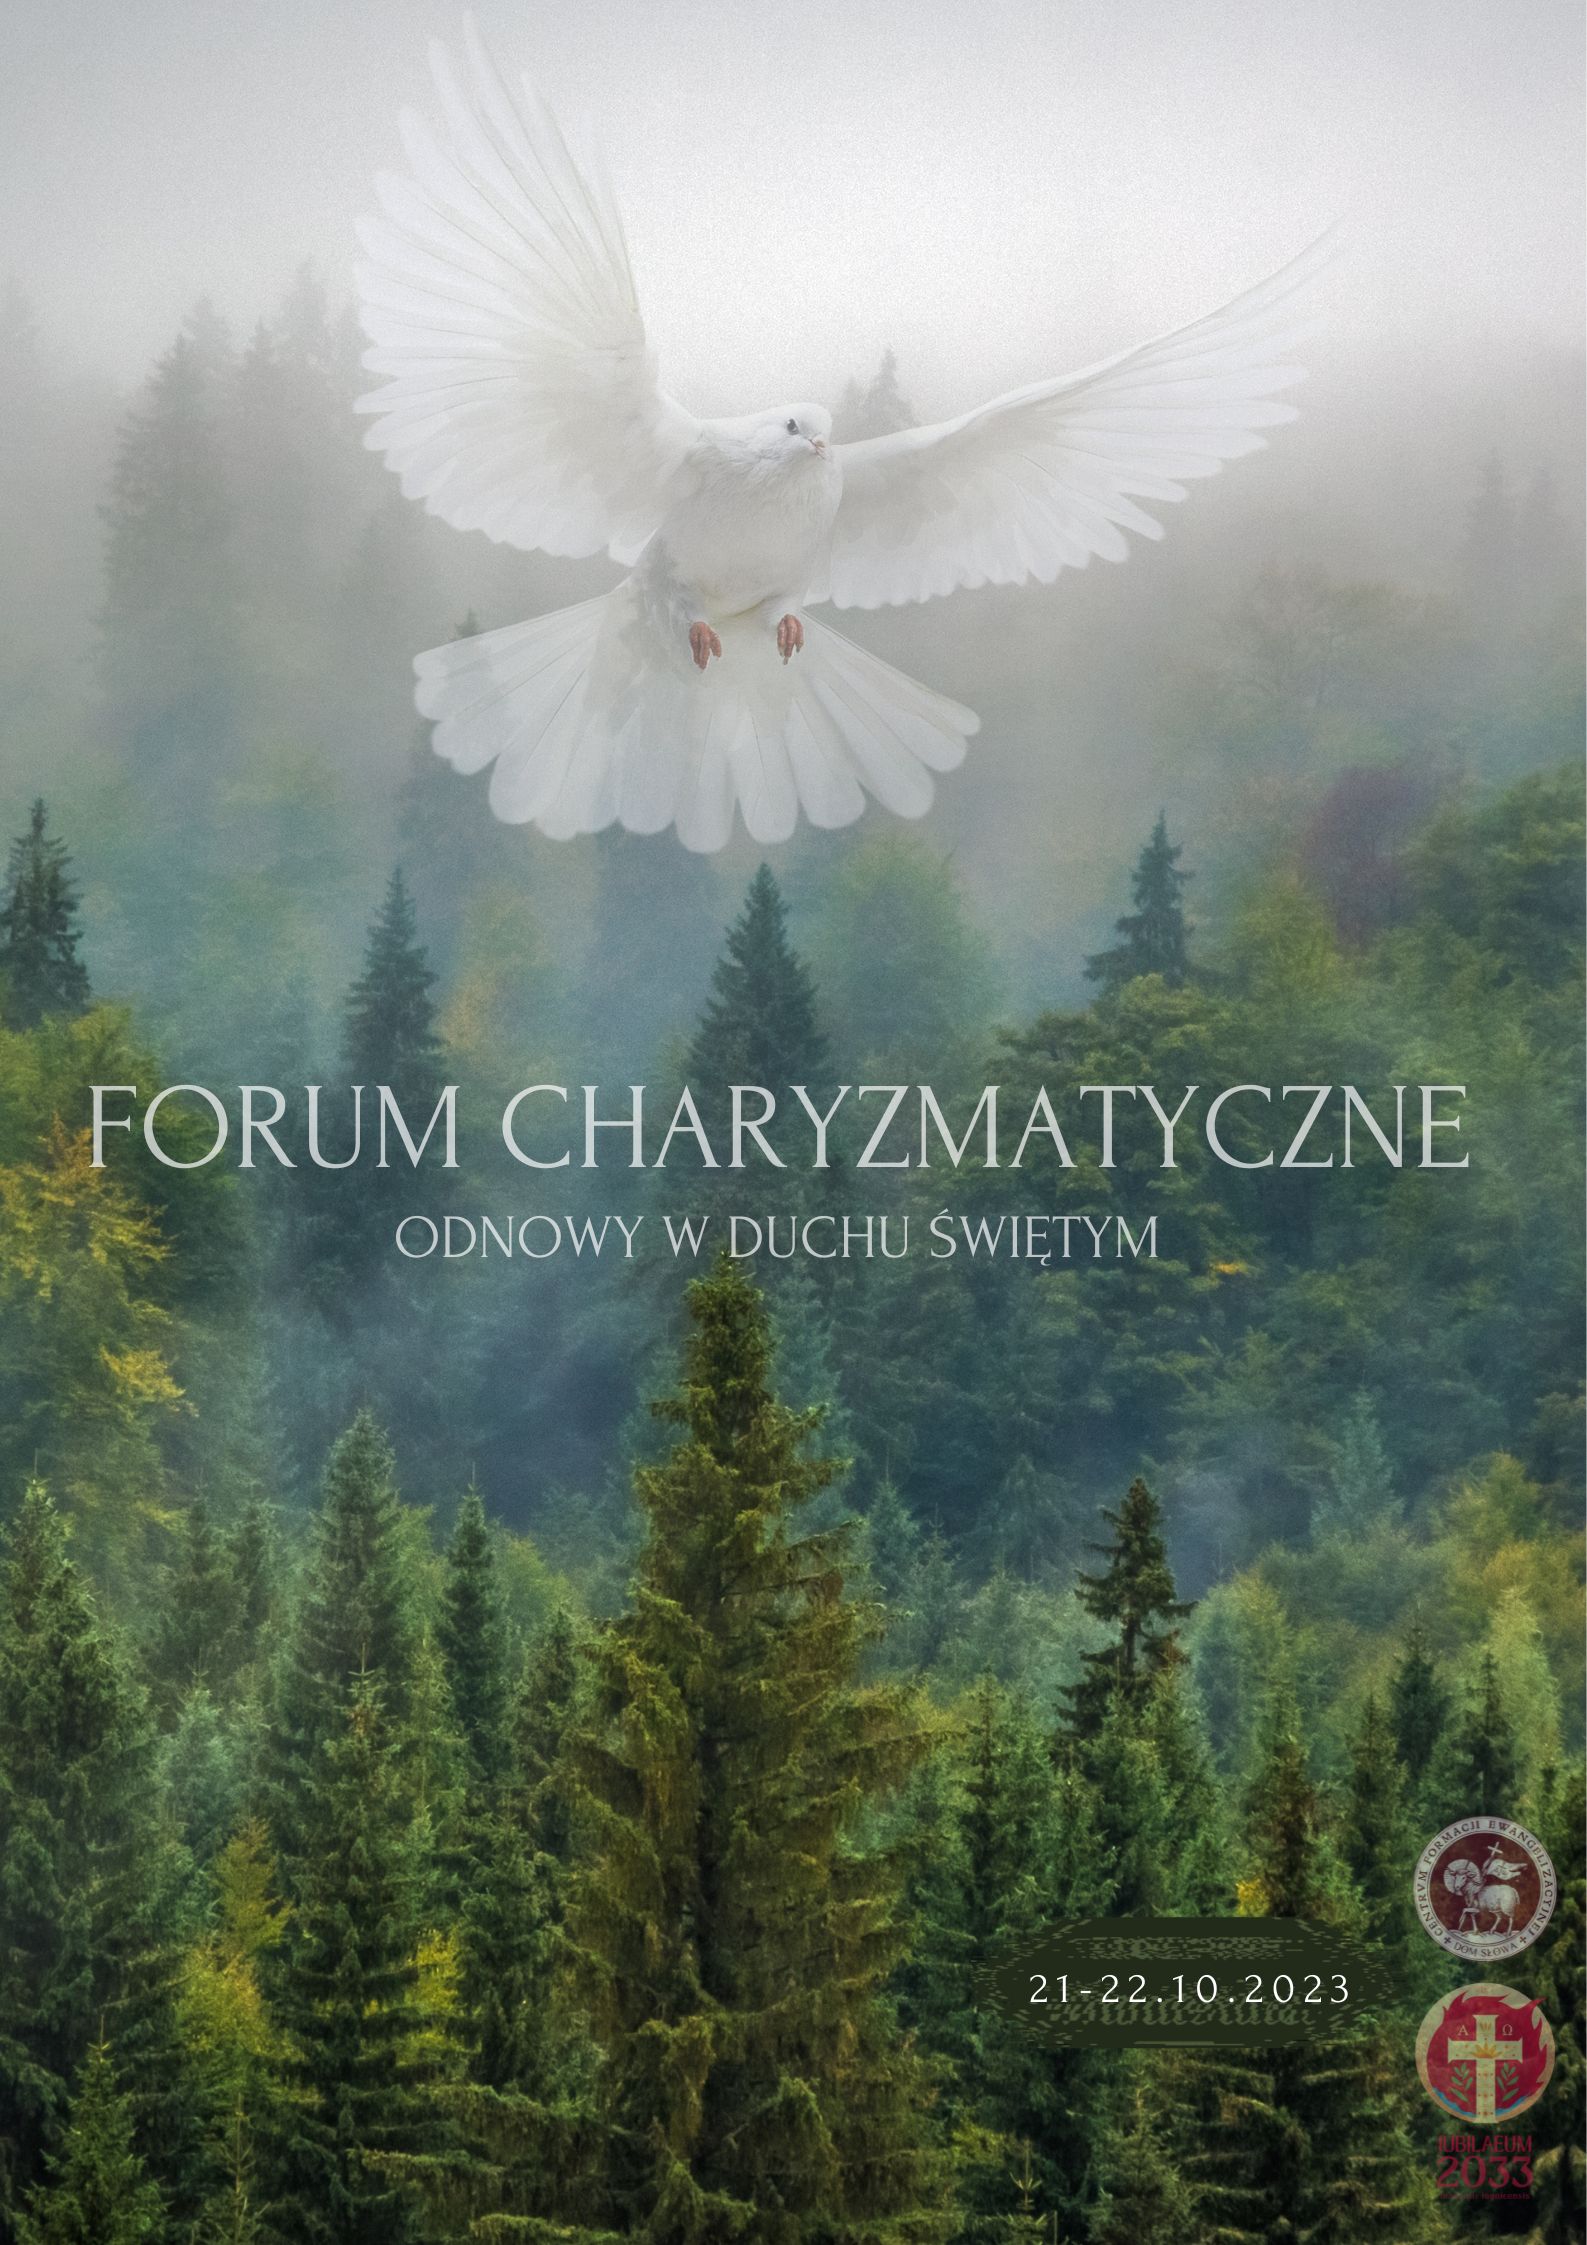 Forum Charyzmatyczne